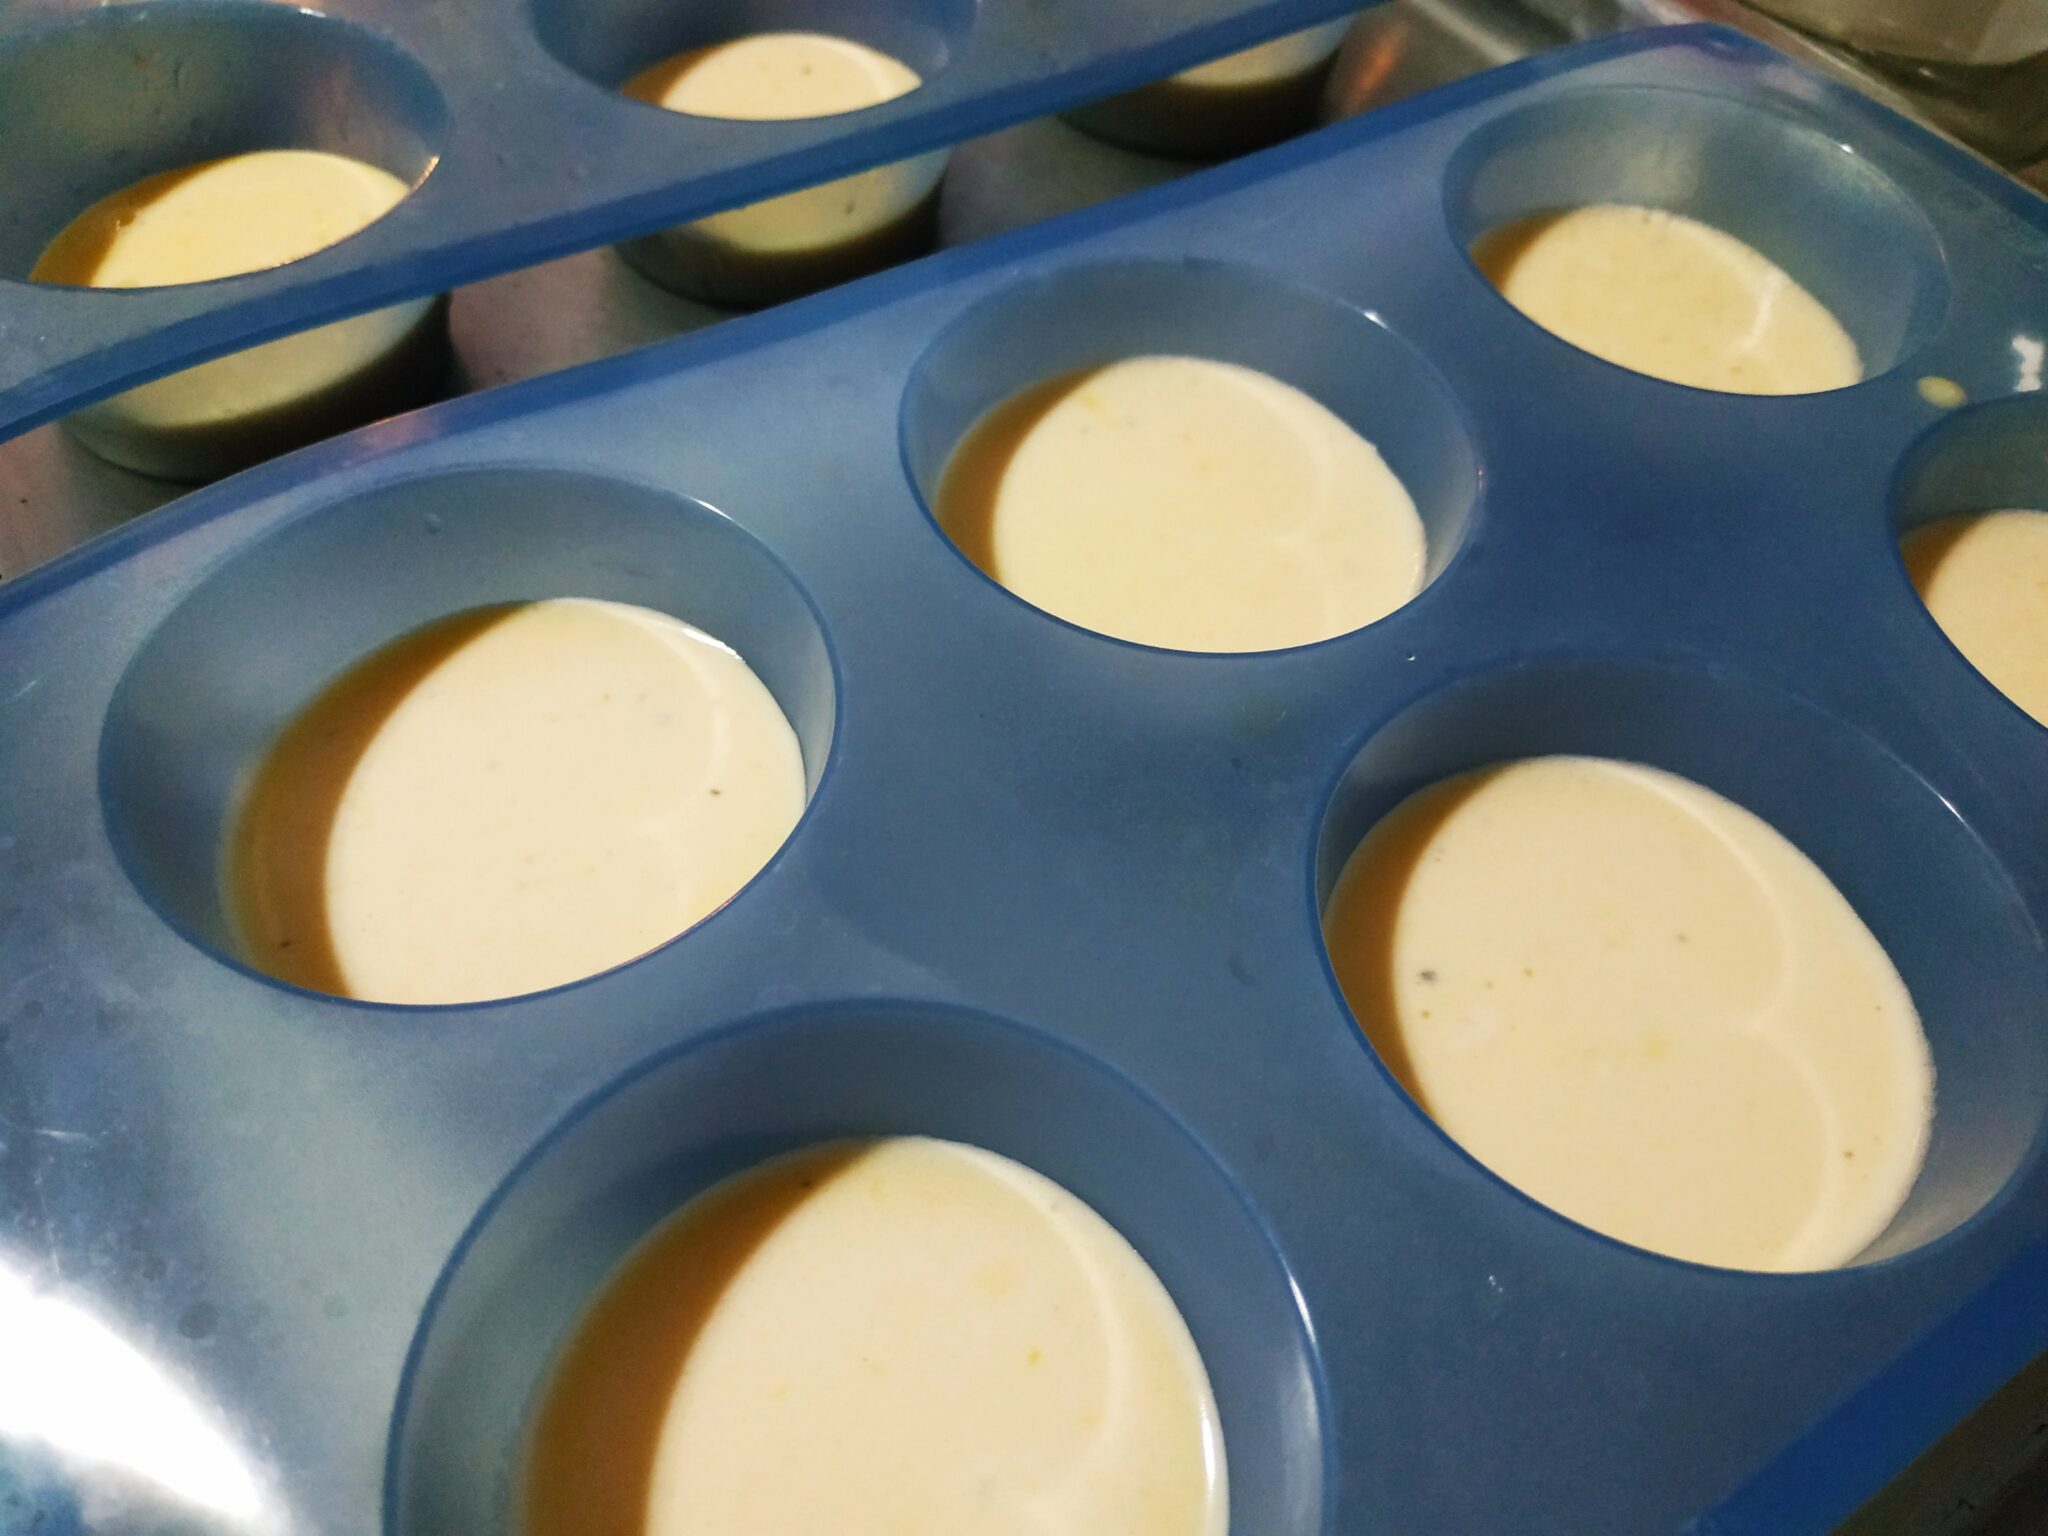 img 20190929 2336374916837137158620775 - Cocina con #MamaKeto: muffins de huevo con tomate y espinacas